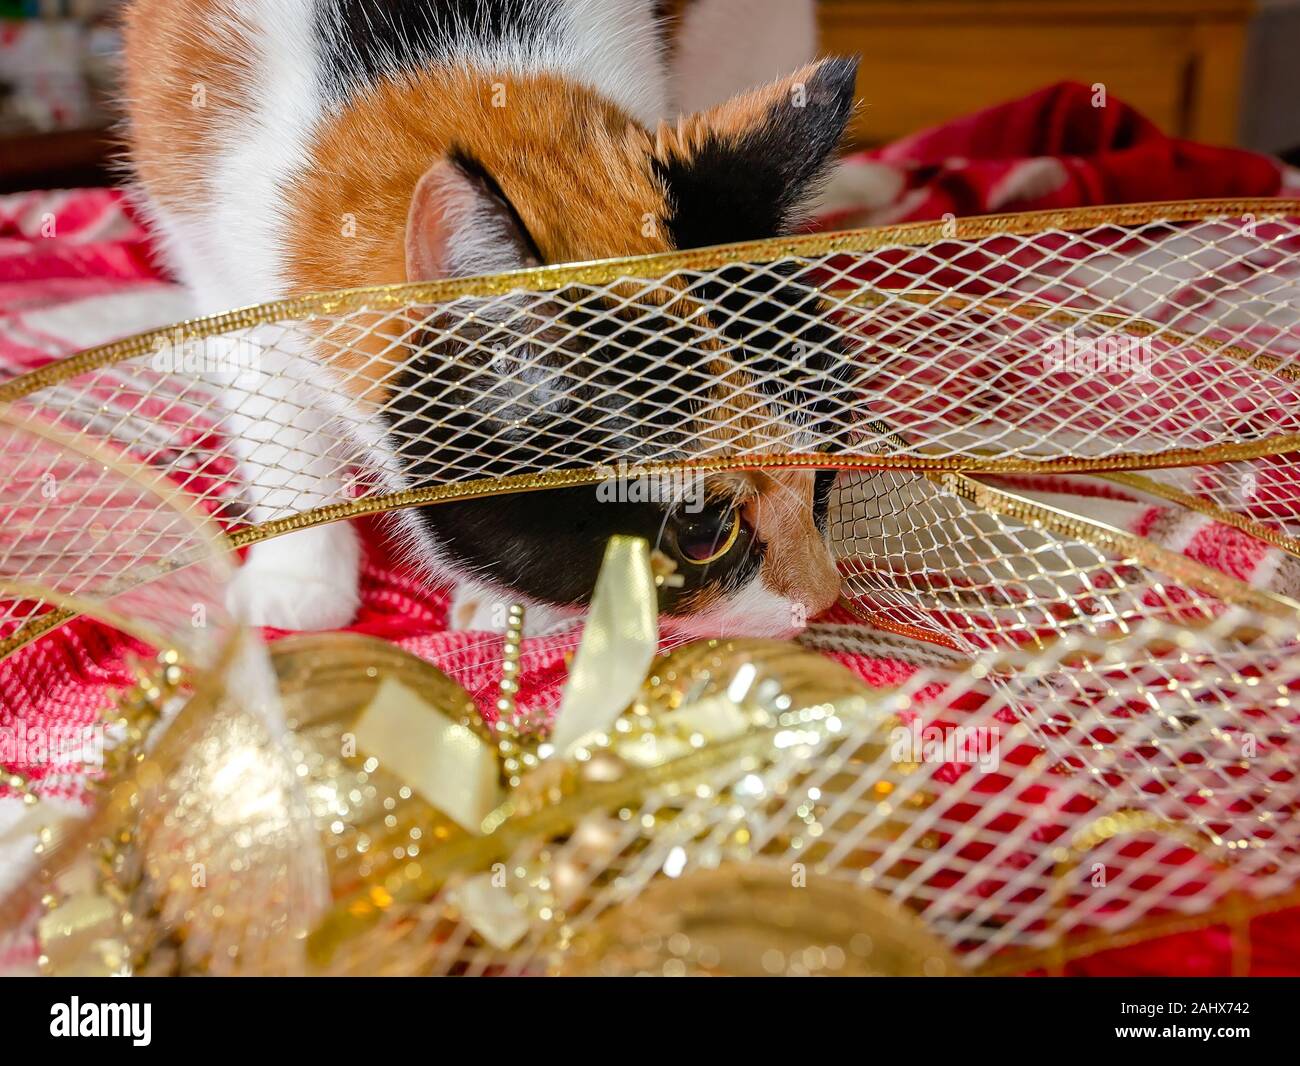 Zucca, un quattro-anno-vecchia gatta calico, ispeziona oro Ornamenti natale e nastro, Dic 29, 2019, in Coden, Alabama. Foto Stock